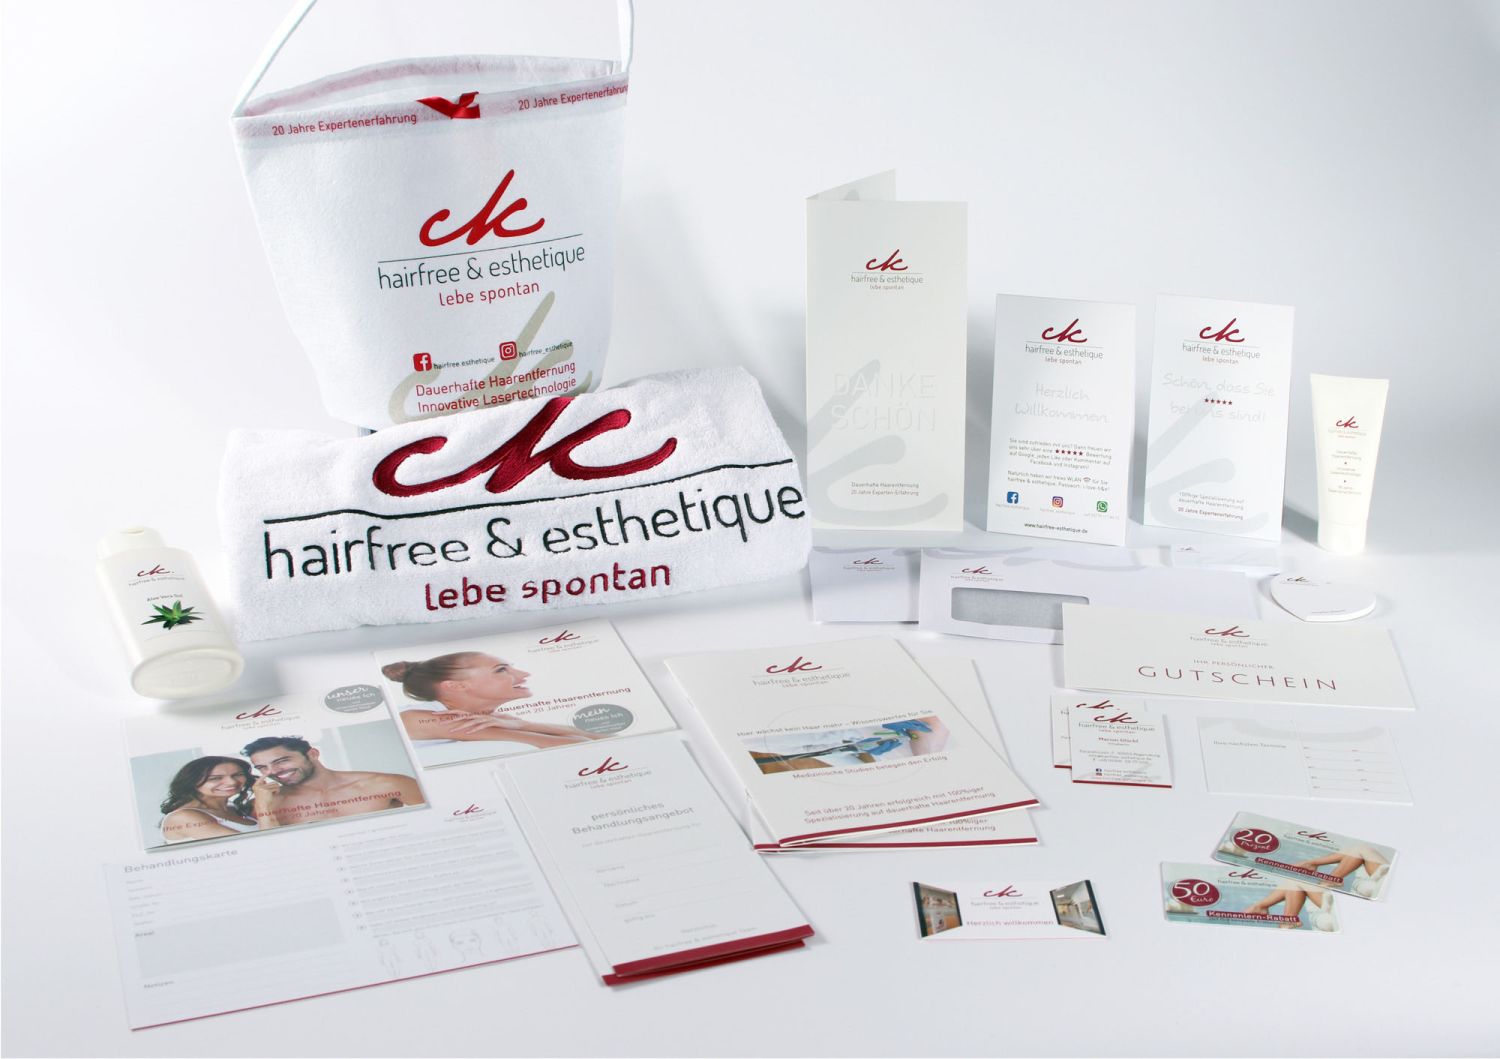 Komplettes CI - Branding und Give-aways für das Laserinstitut hairfree&esthetique in Regensburg (siehe auch Raumplanung)